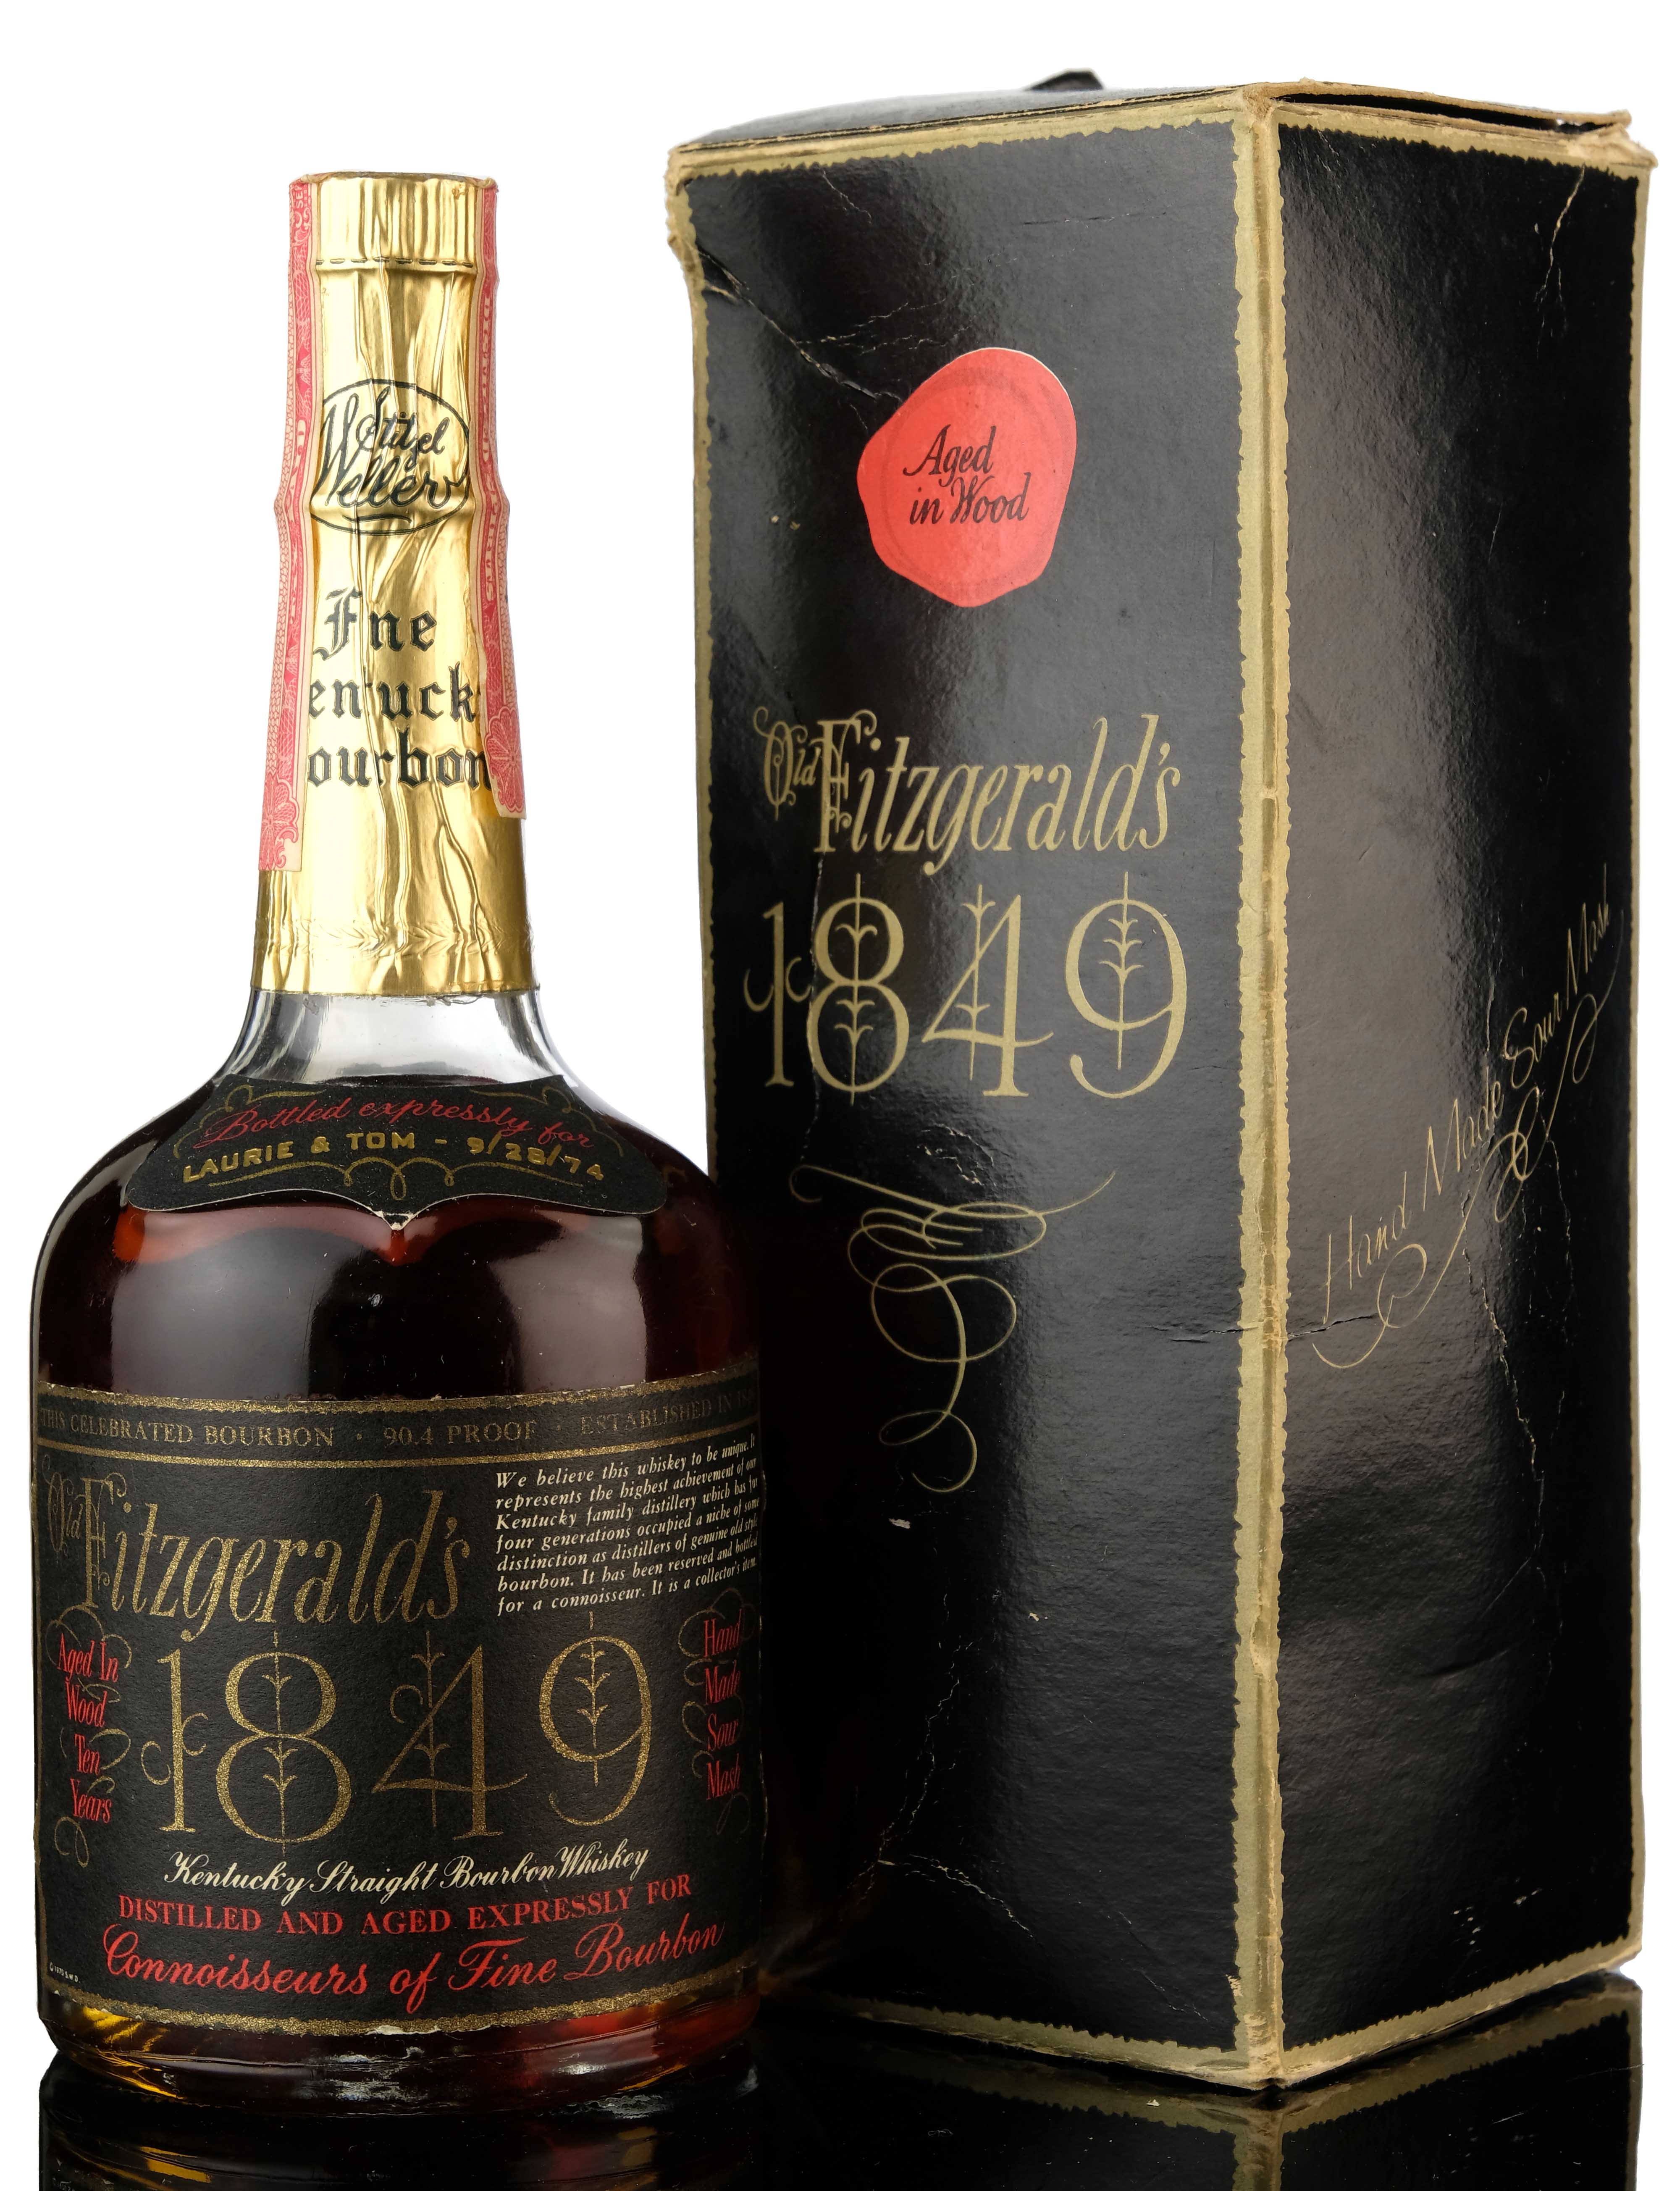 Old Fitzgeralds 1849 10 Year Old - 1974 Release - Quarter Bottle